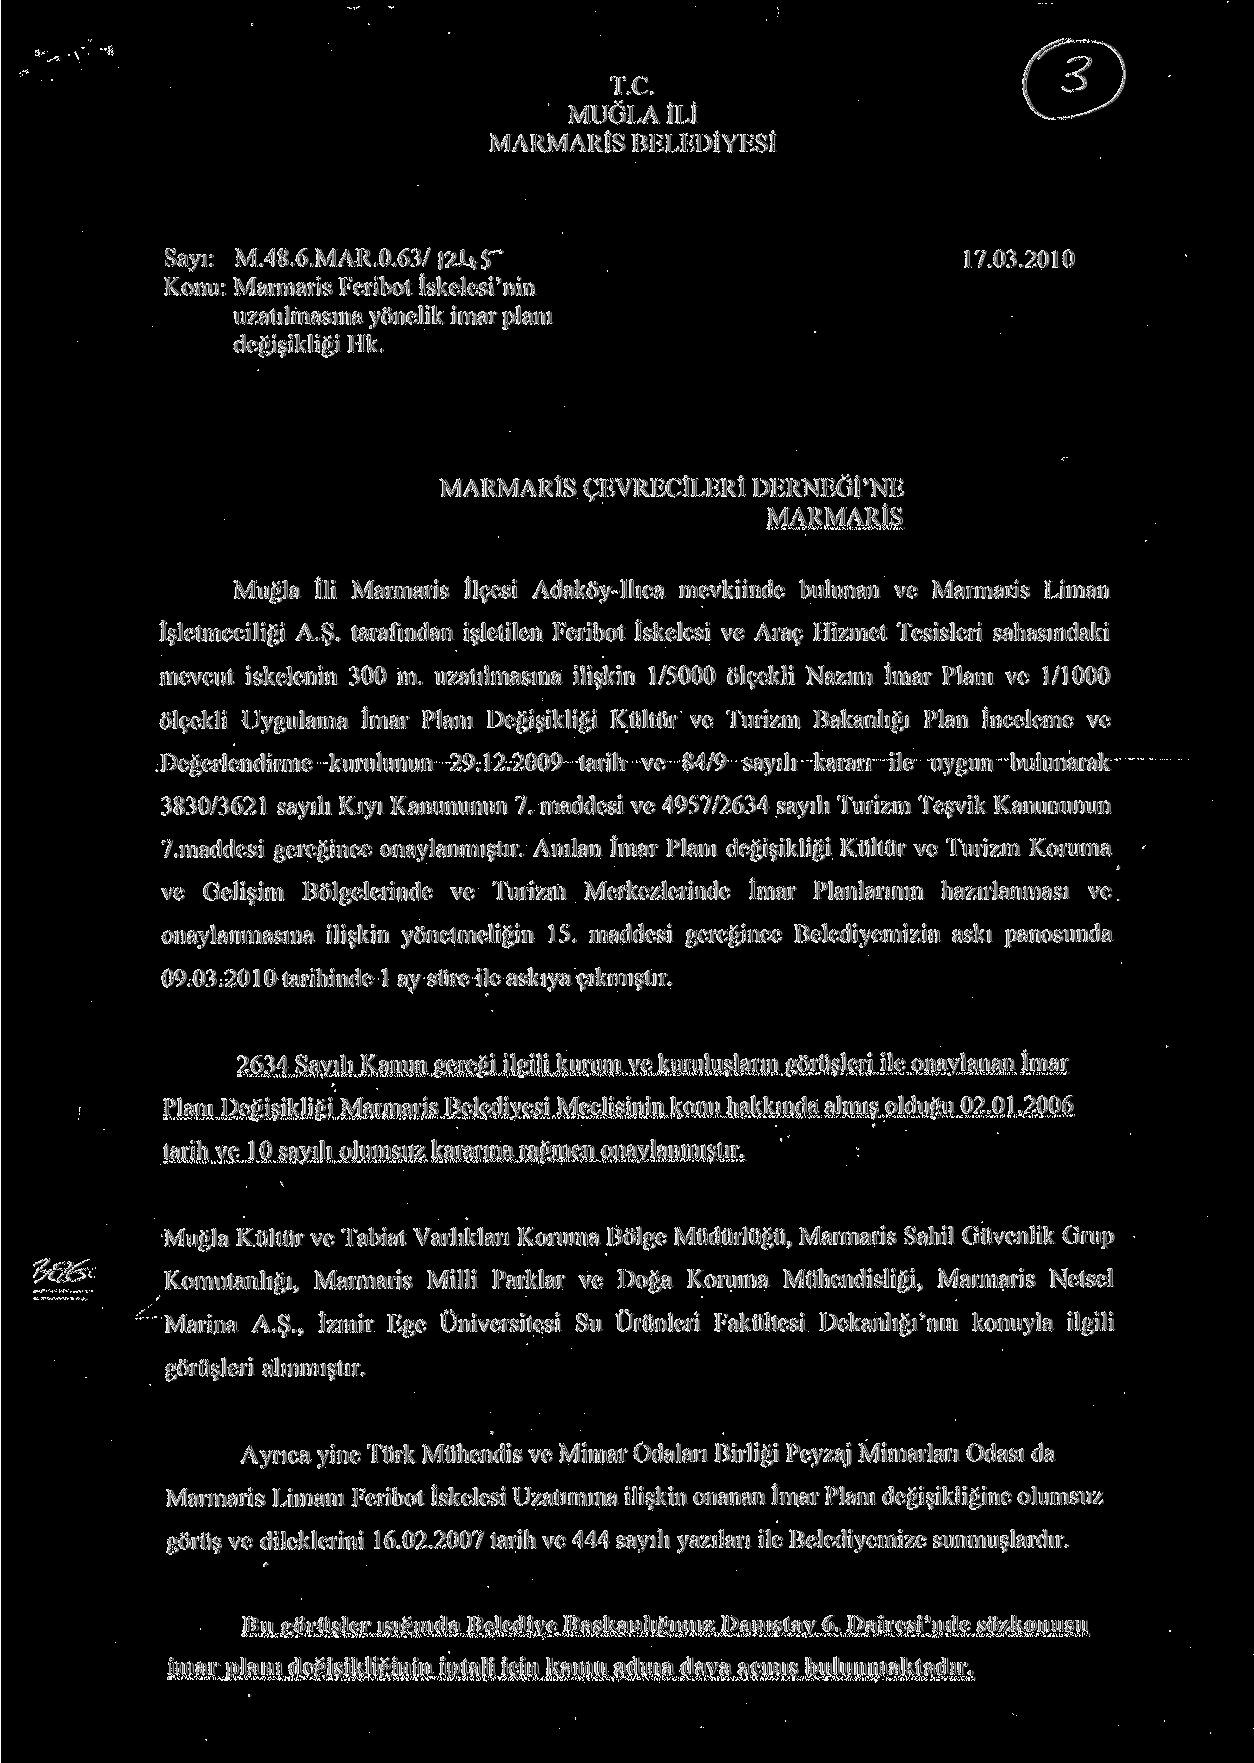 T.C. MUĞLA İLİ MARMARİS BELEDİYESİ Sayı: M.48.6.MAR.0.63/ 2-U$~" 17.03.2010 Konu: Marmaris Feribot İskelesi'nin uzatılmasına yönelik imar planı değişikliği Hk.